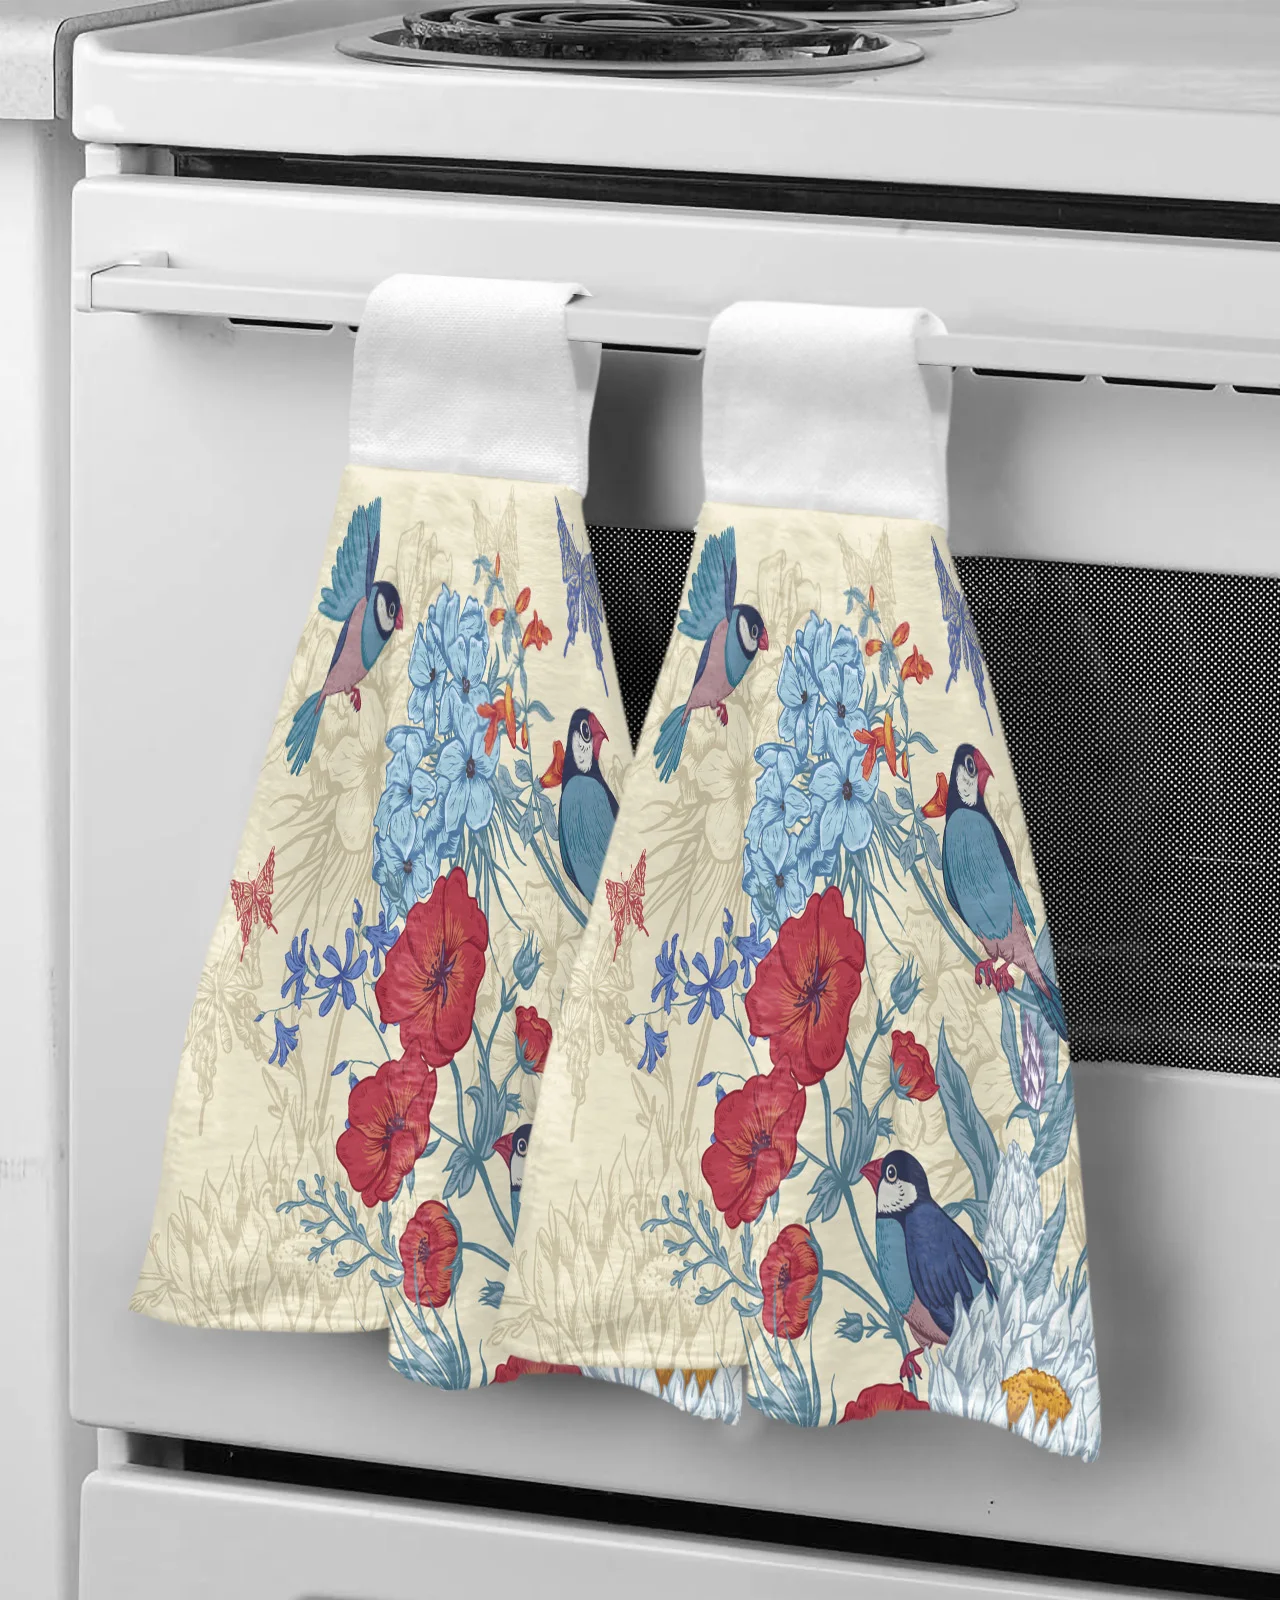 

Впитывающие полотенца, носовой платок, кухонная посуда, чистящее полотенце в винтажном стиле с цветами, птицей, бабочкой